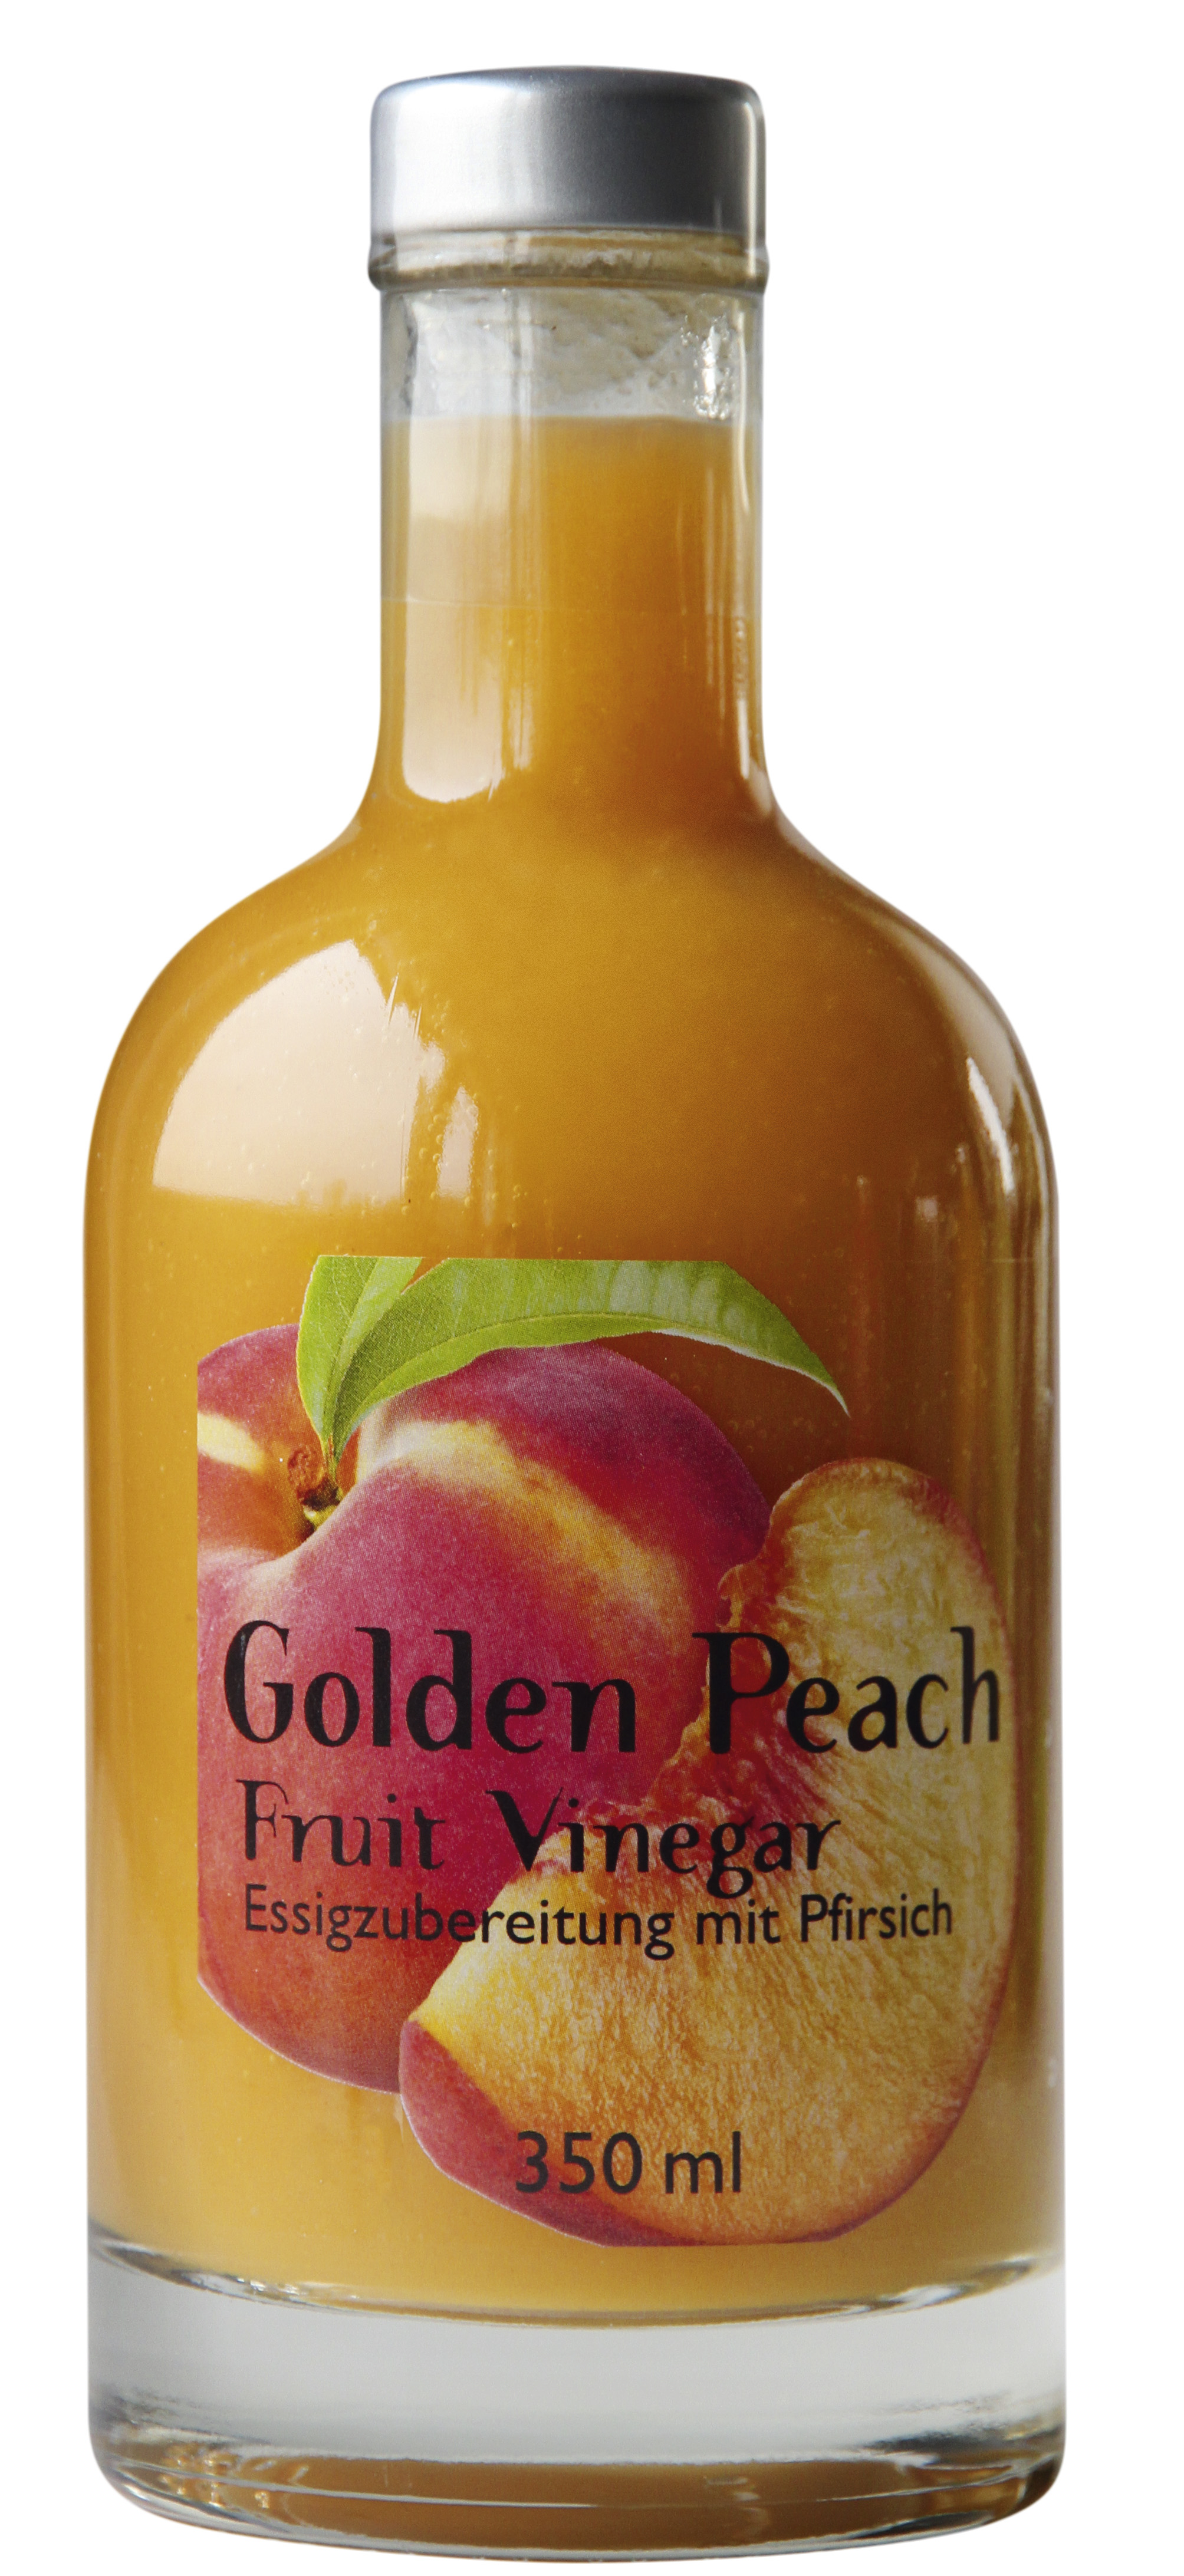 Golden Peach Fruit Vinegar